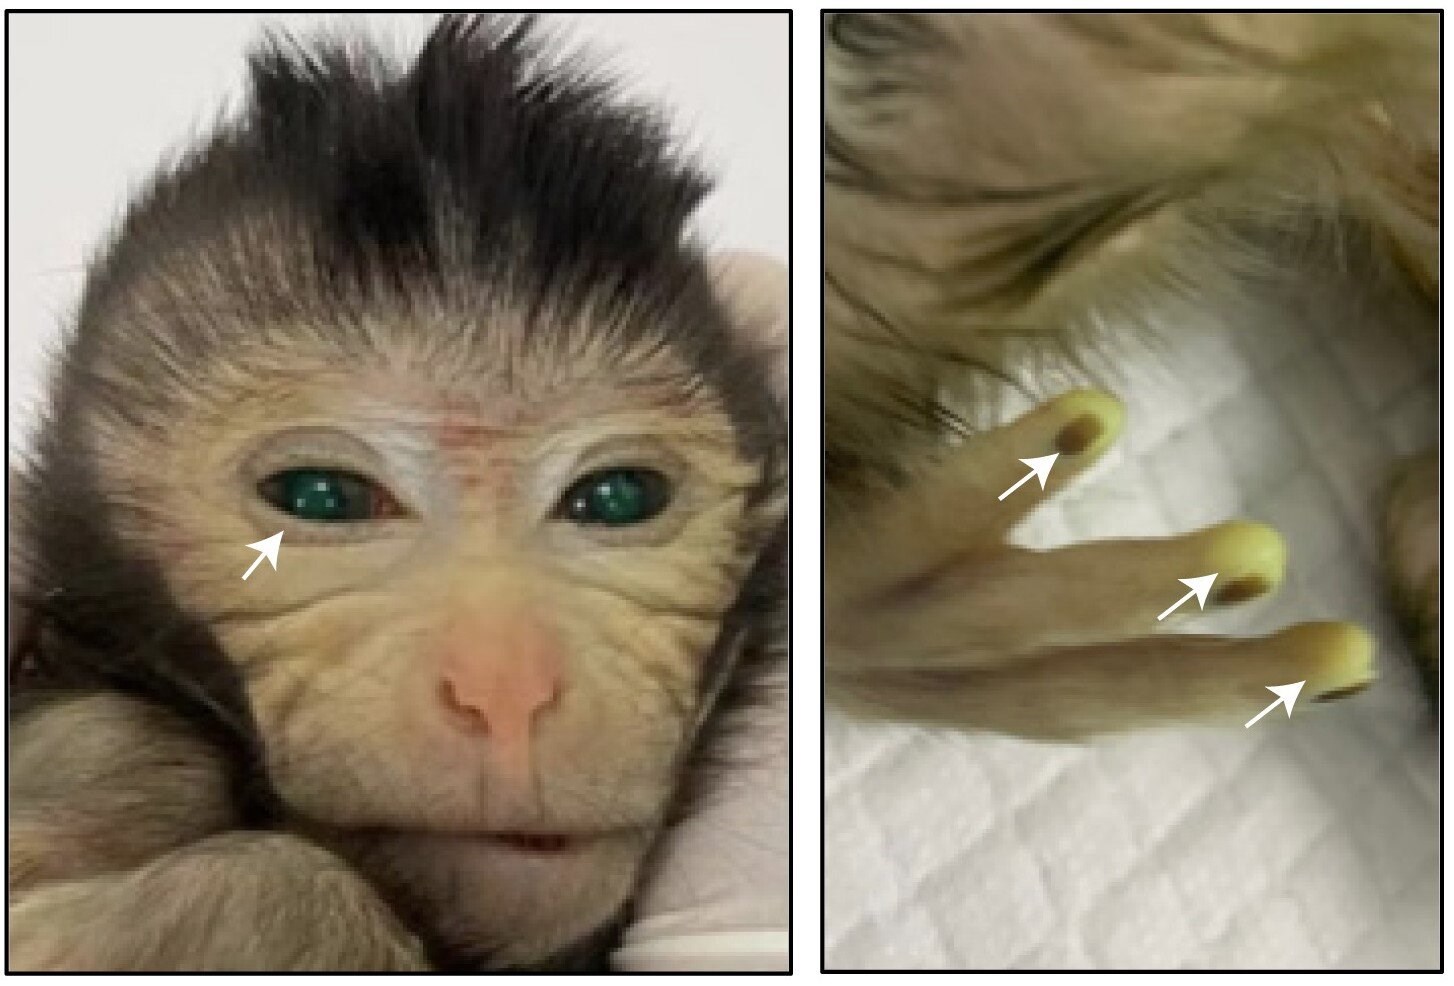 Genetik mühendislik sonucunda maymunun “floresan” parmakları oldu